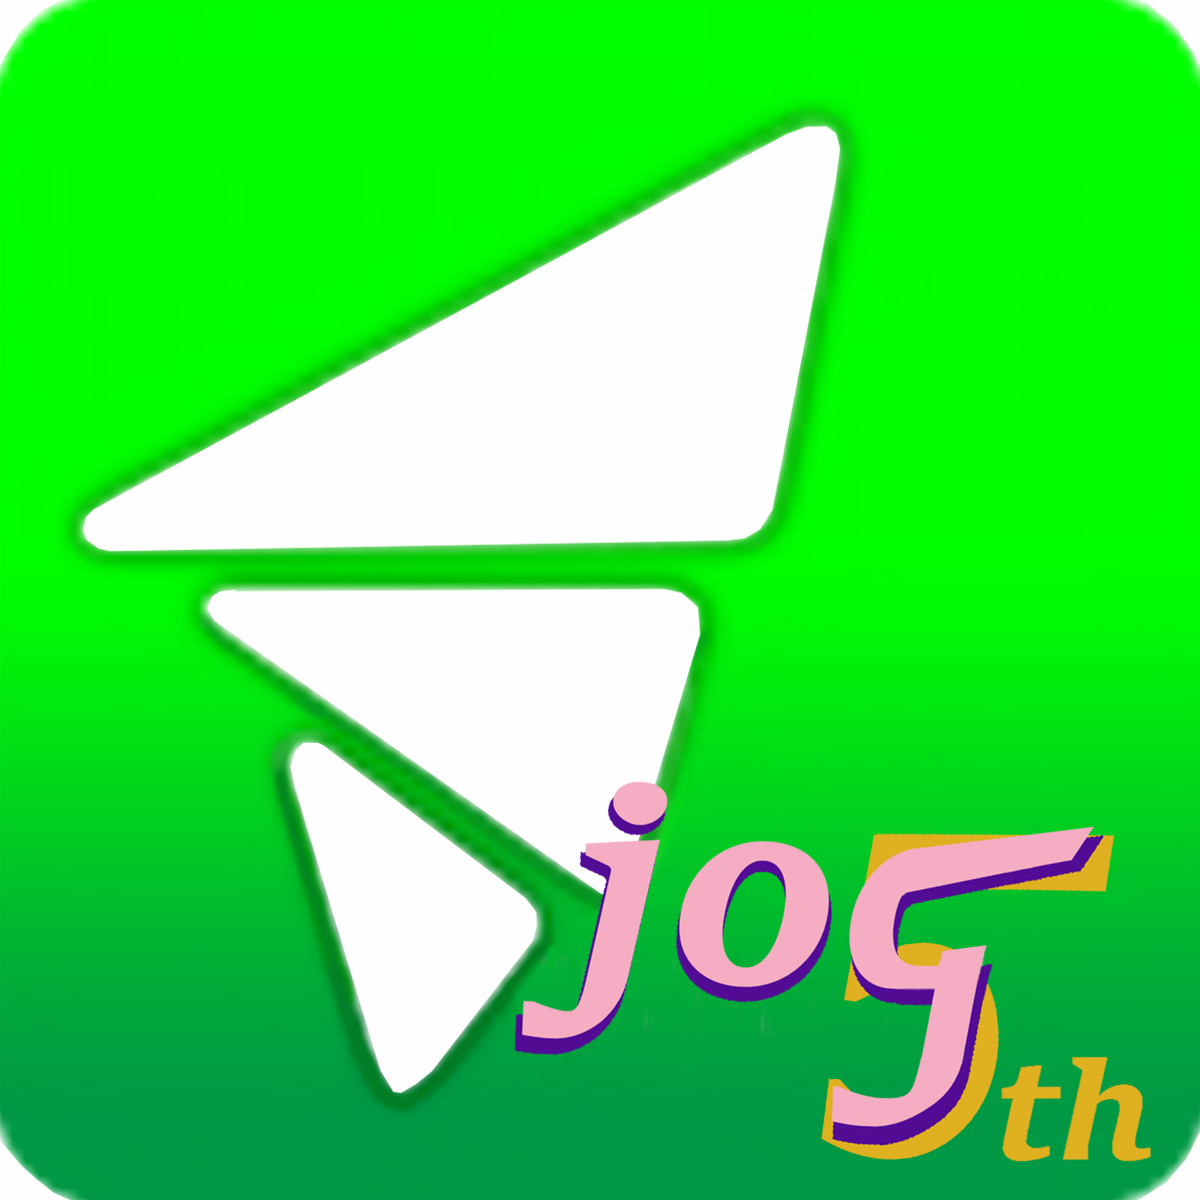 附件 JOG 5th icon.jpg